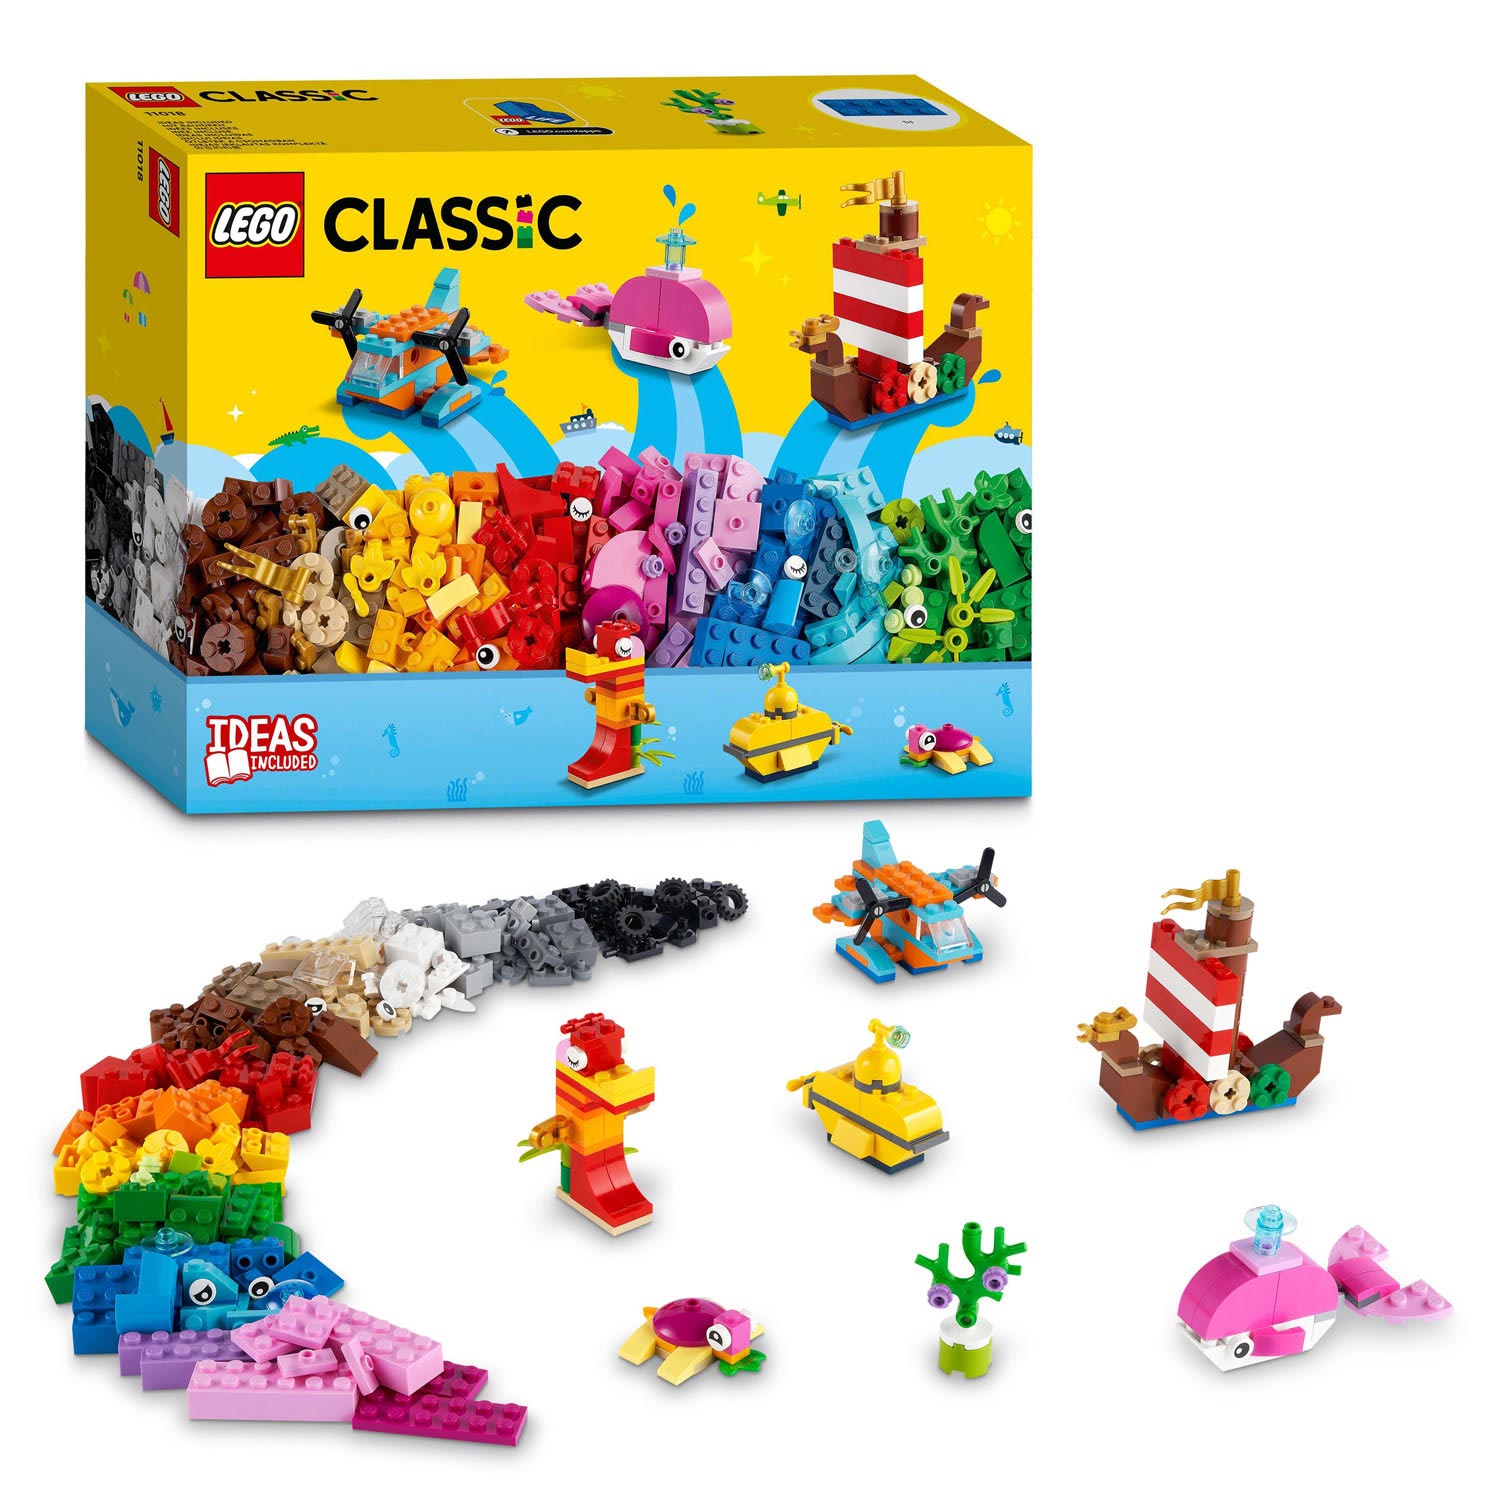 Plaque de base blanche 32 x 32 - LEGO® Classic 11026 - Super